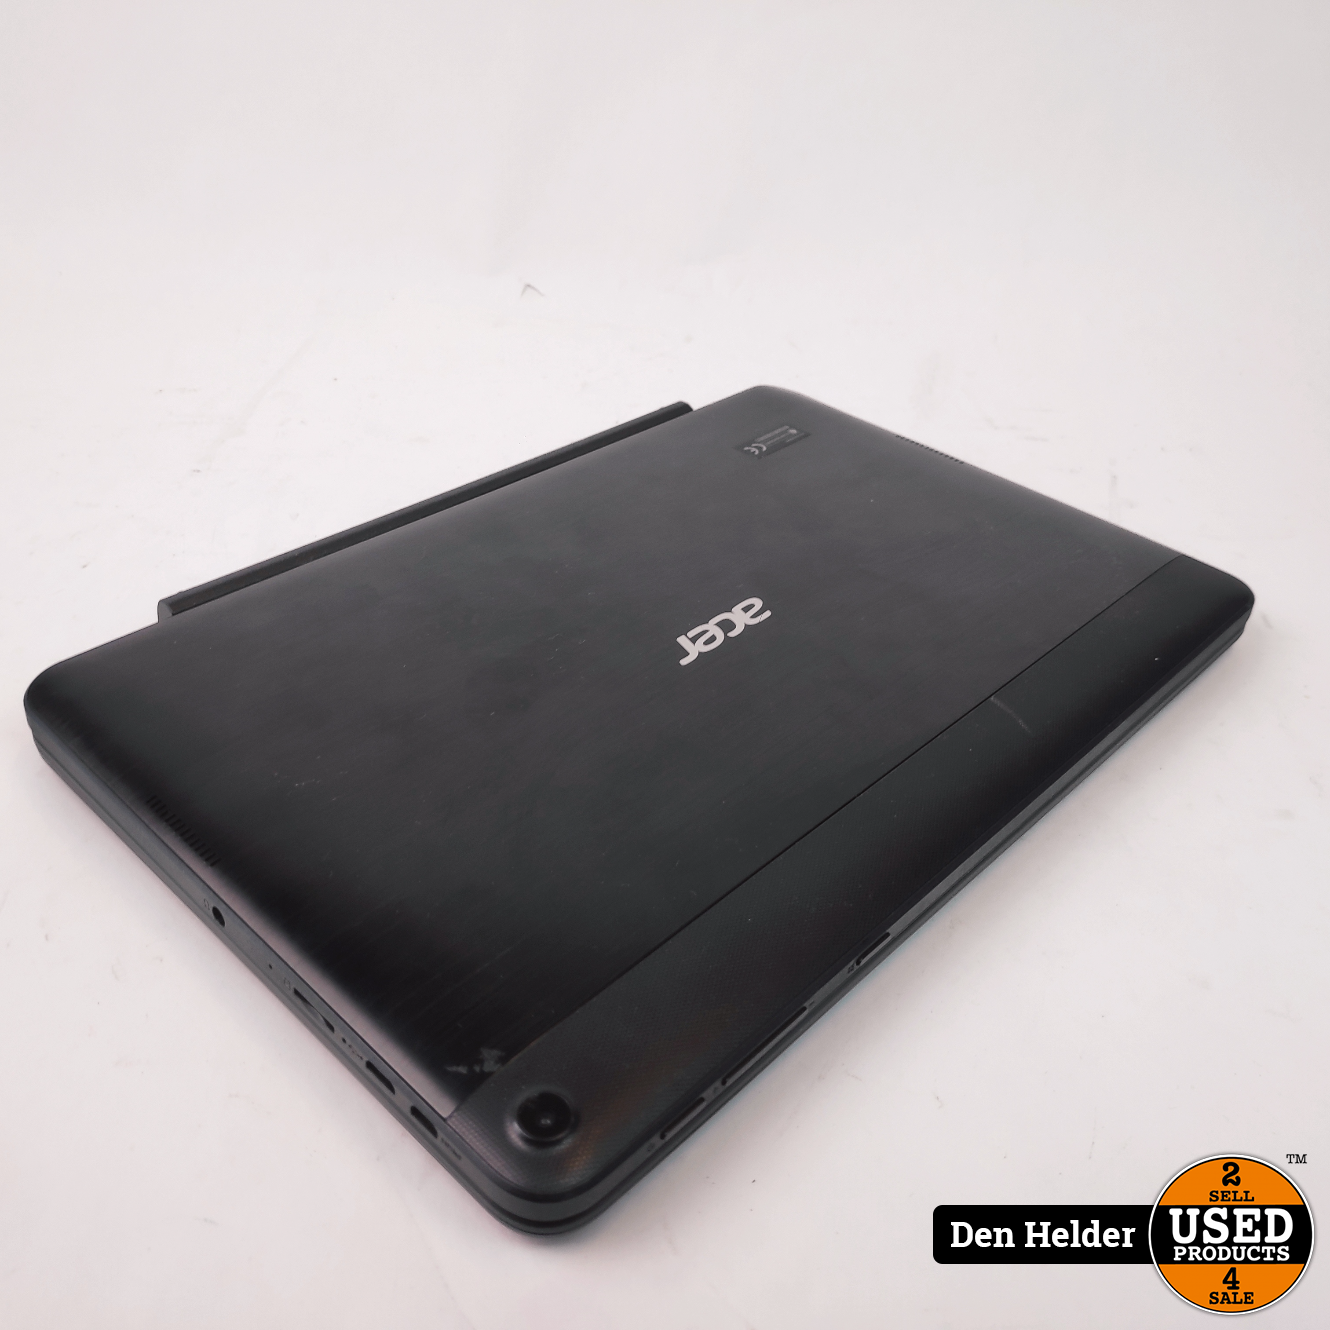 voor de hand liggend toetje Ontevreden Acer Aspire One 10 2 in 1 Laptop 2GB 64GB HDD - Used Products Den Helder